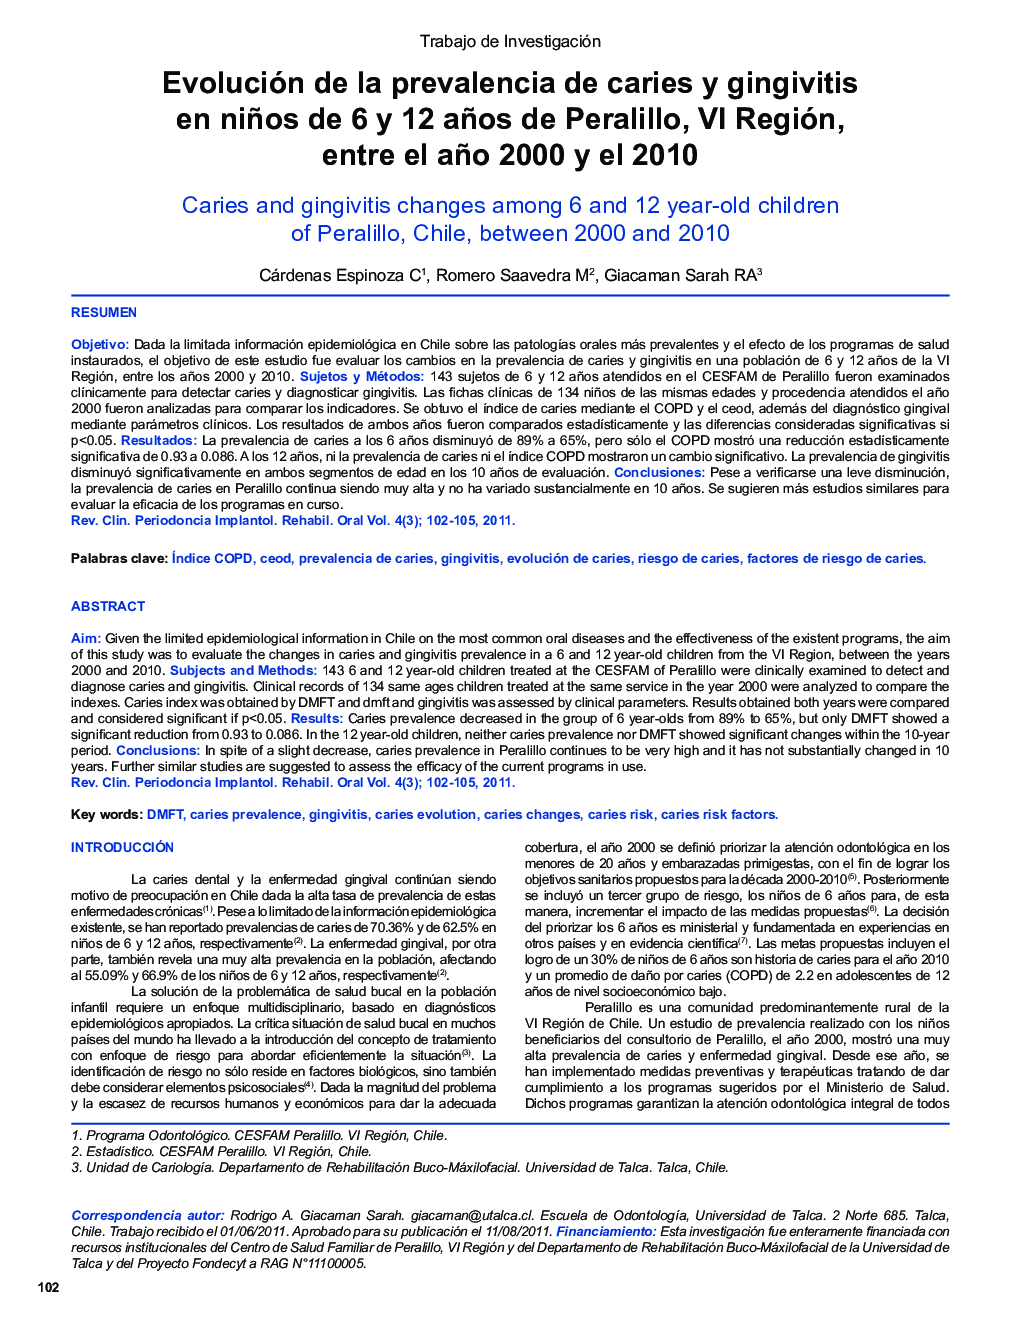 Evolución de la prevalencia de caries y gingivitis en niños de 6 y 12 años de Peralillo, VI Región, entre el año 2000 y el 2010